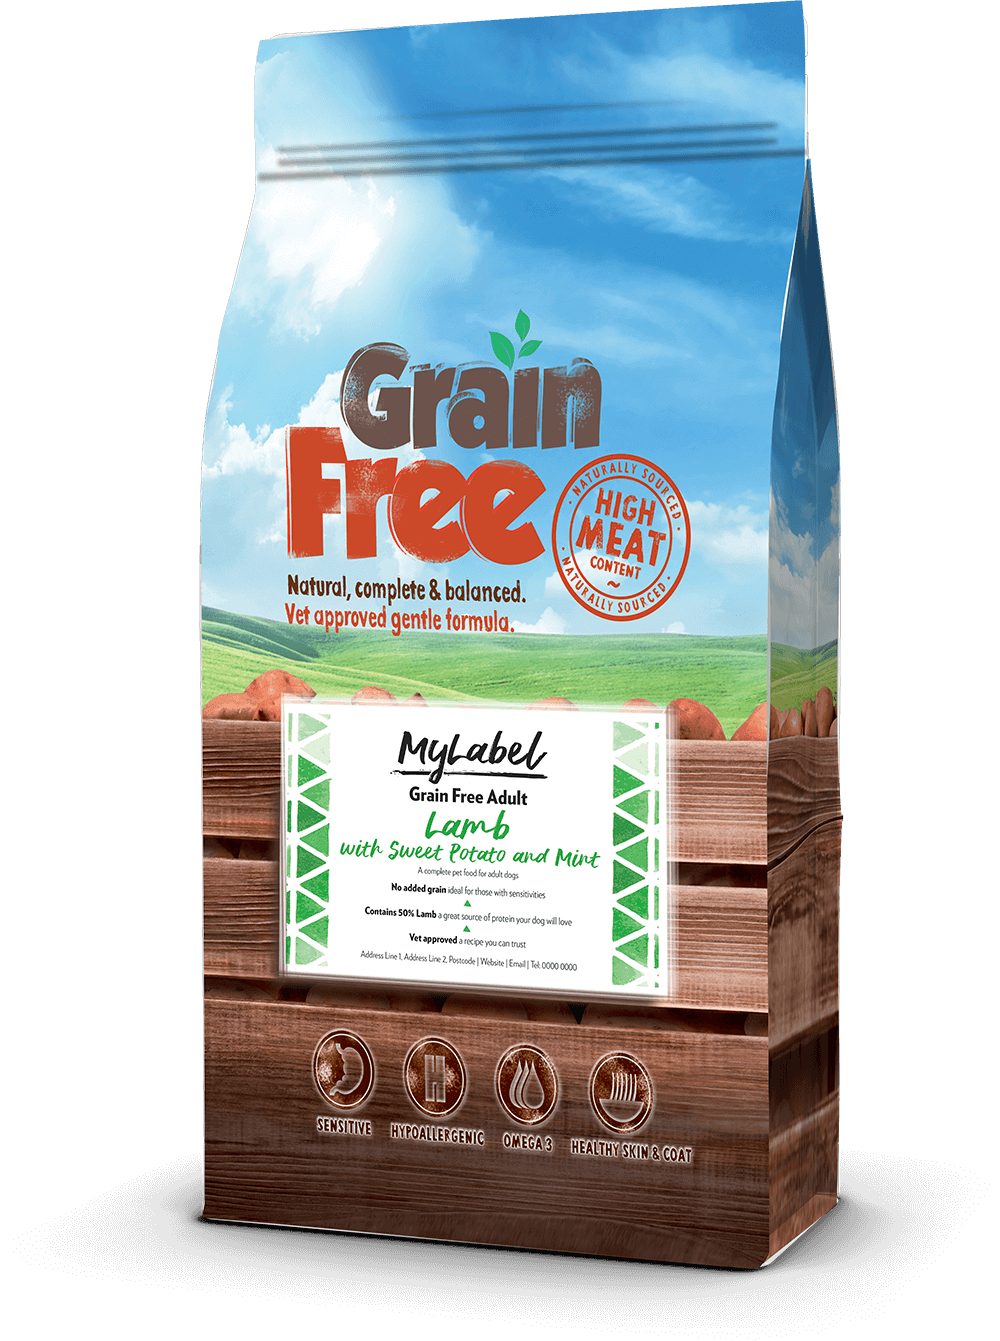 La gamma di alimenti per animali domestici Grain Free comprende una selezione delle migliori fonti proteiche animali preparate al momento, nutrienti e altamente digeribili, perfettamente su misura per cani e gatti.